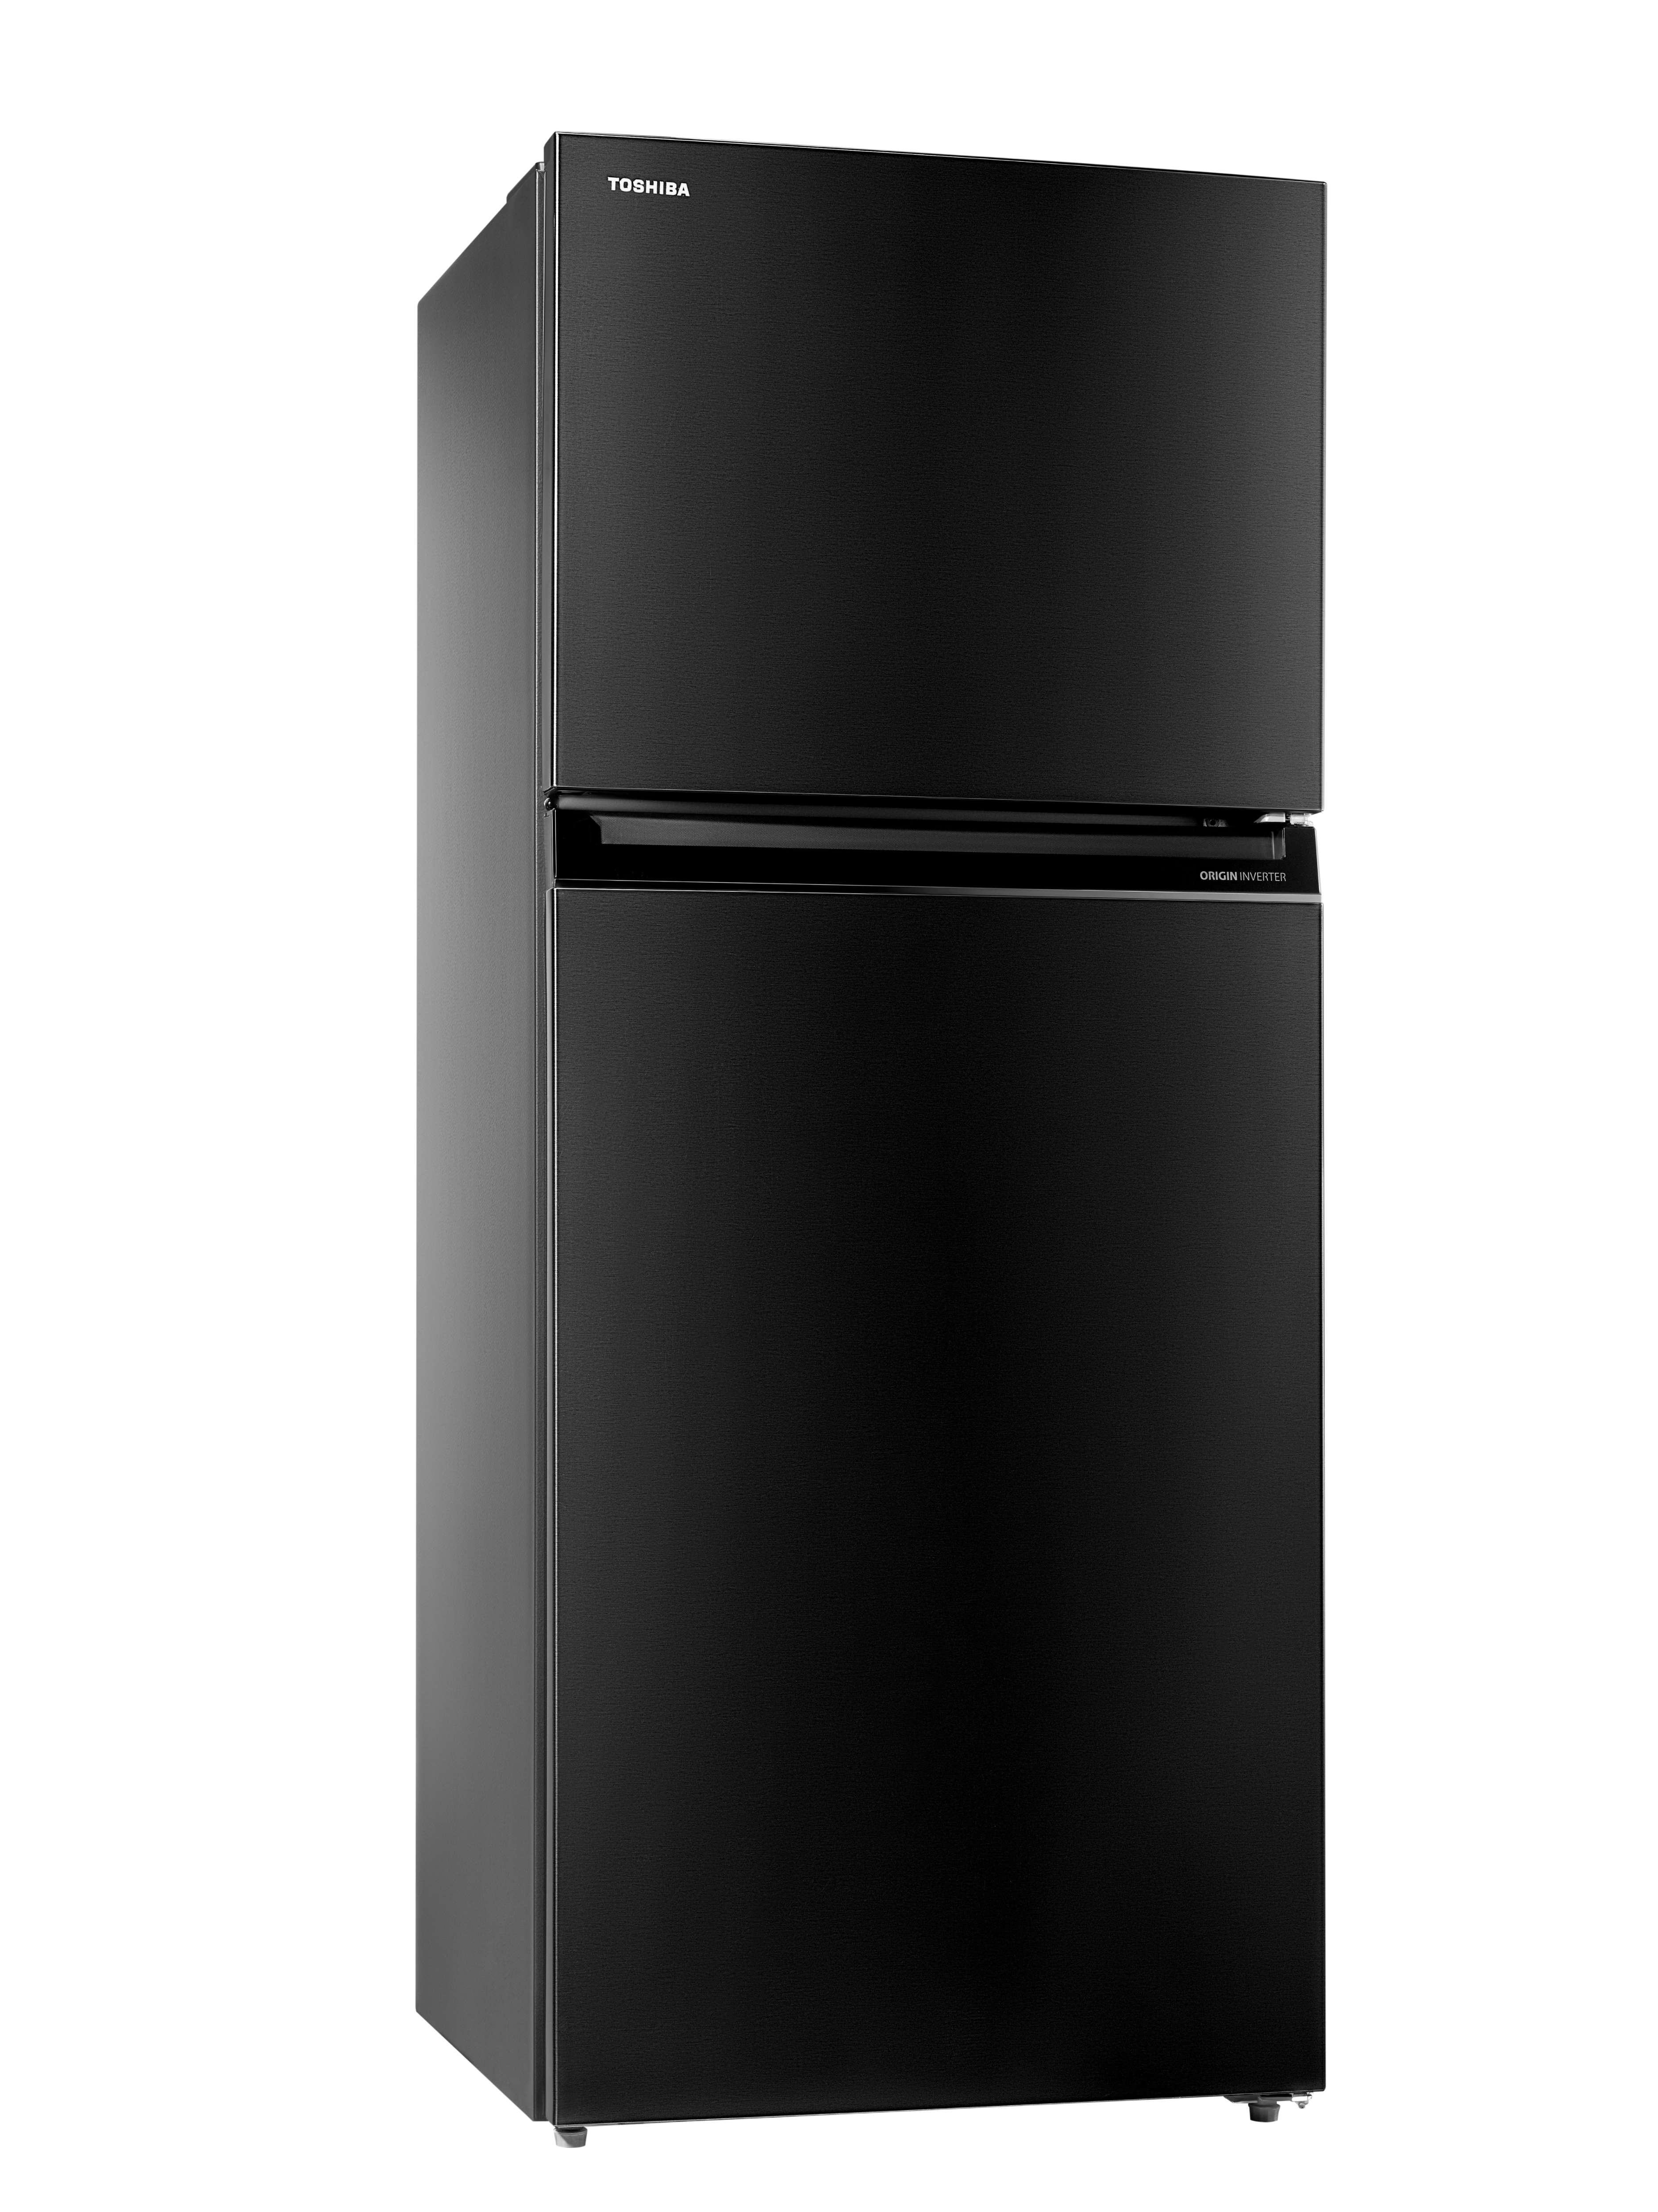 Buy Refrigerators | Toshiba Egypt